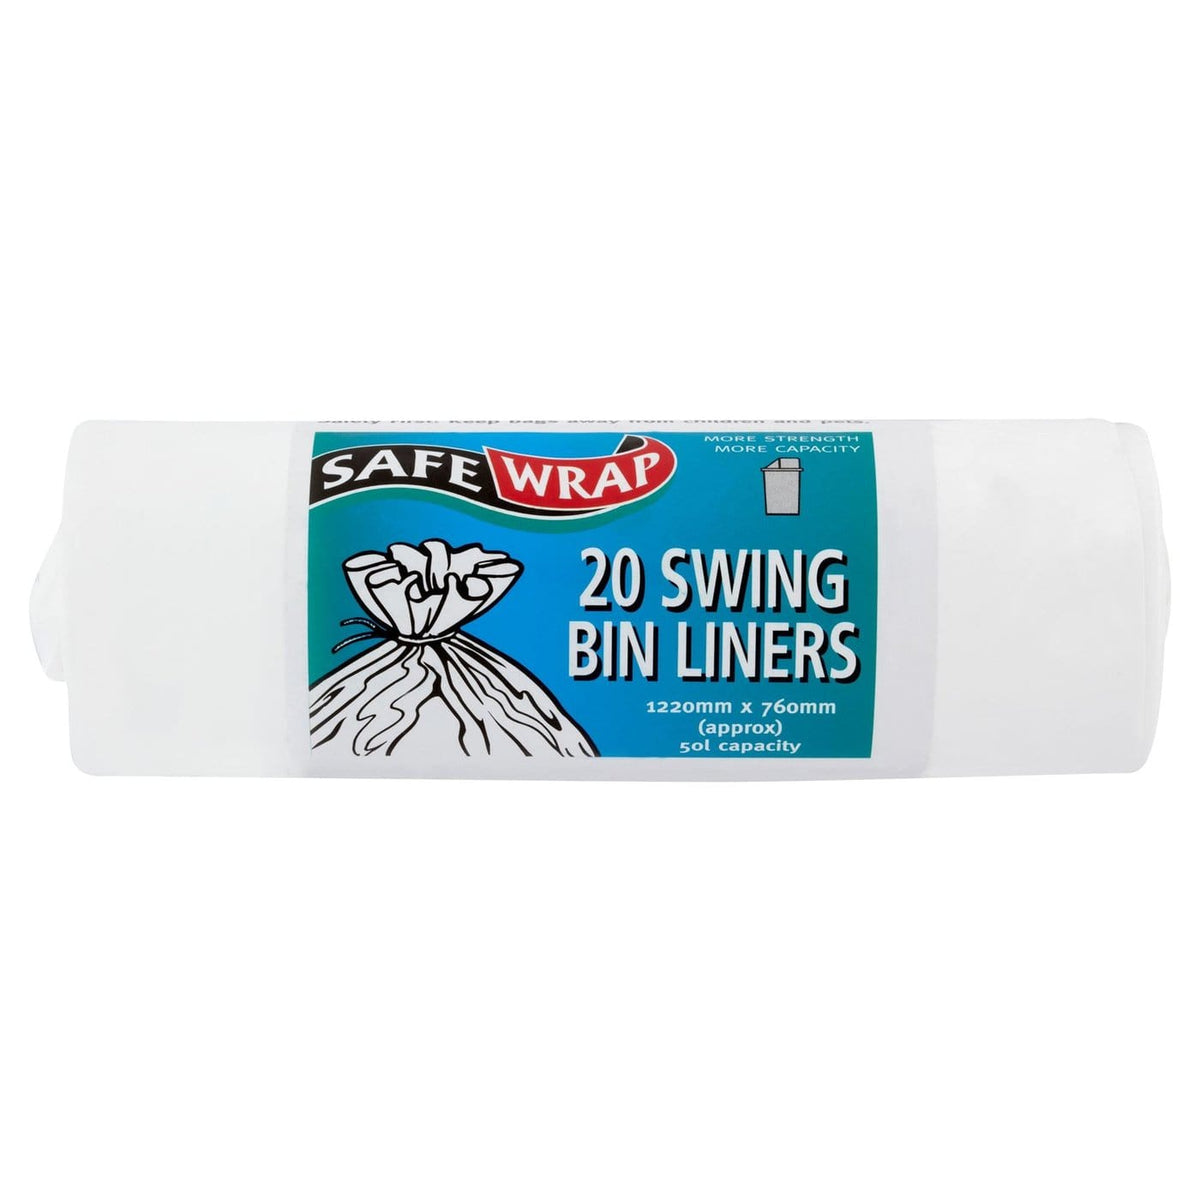 SafeWrap Swing Bin Liners - 20 bags